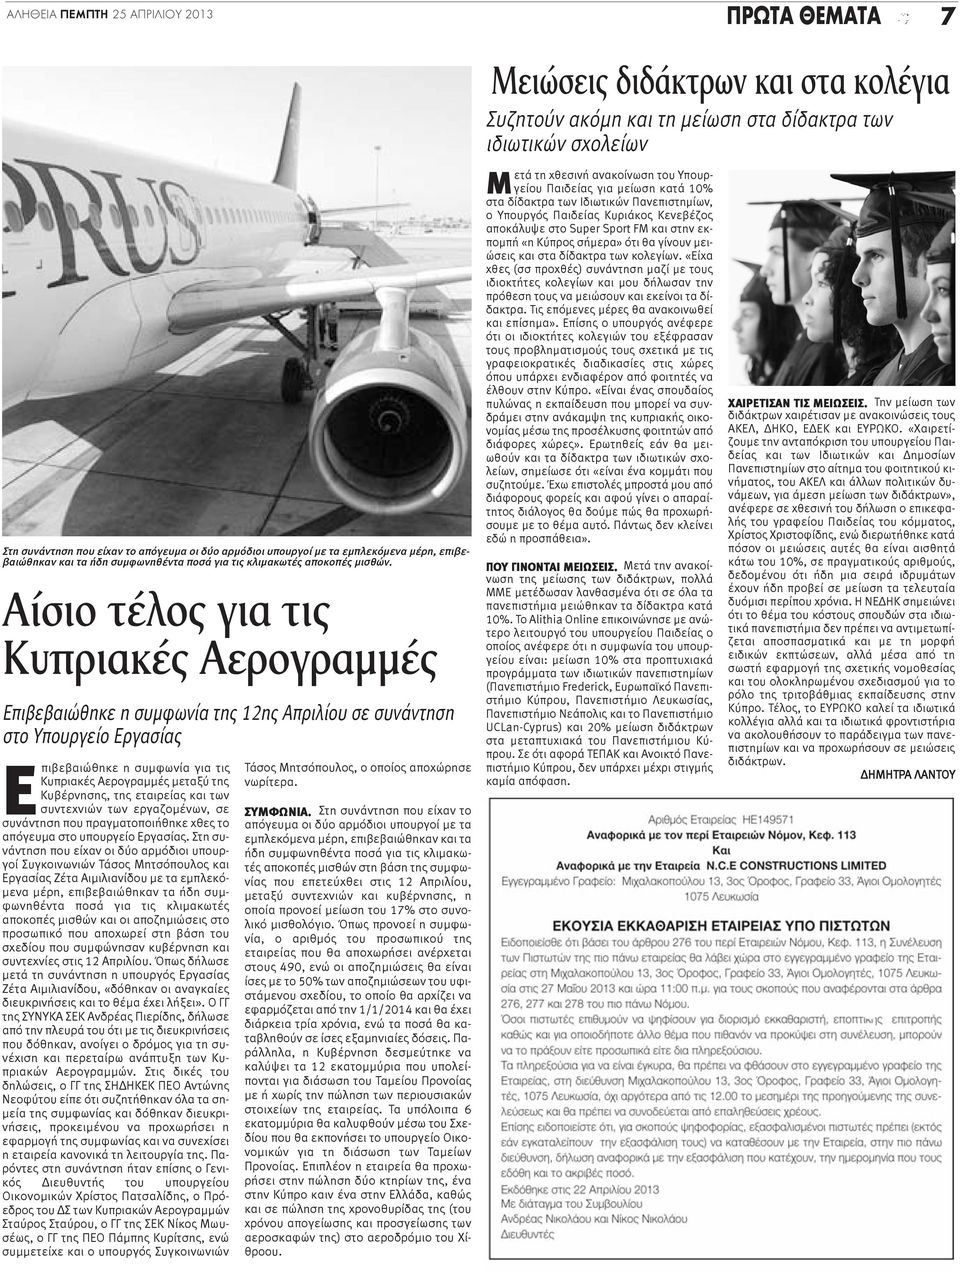 Αίσιο τέλος για τις Κυπριακές Αερογραμμές Επιβεβαιώθηκε η συμφωνία της 12ης Απριλίου σε συνάντηση στο Υπουργείο Εργασίας Επιβεβαιώθηκε η συμφωνία για τις Κυπριακές Αερογραμμές μεταξύ της Κυβέρνησης,